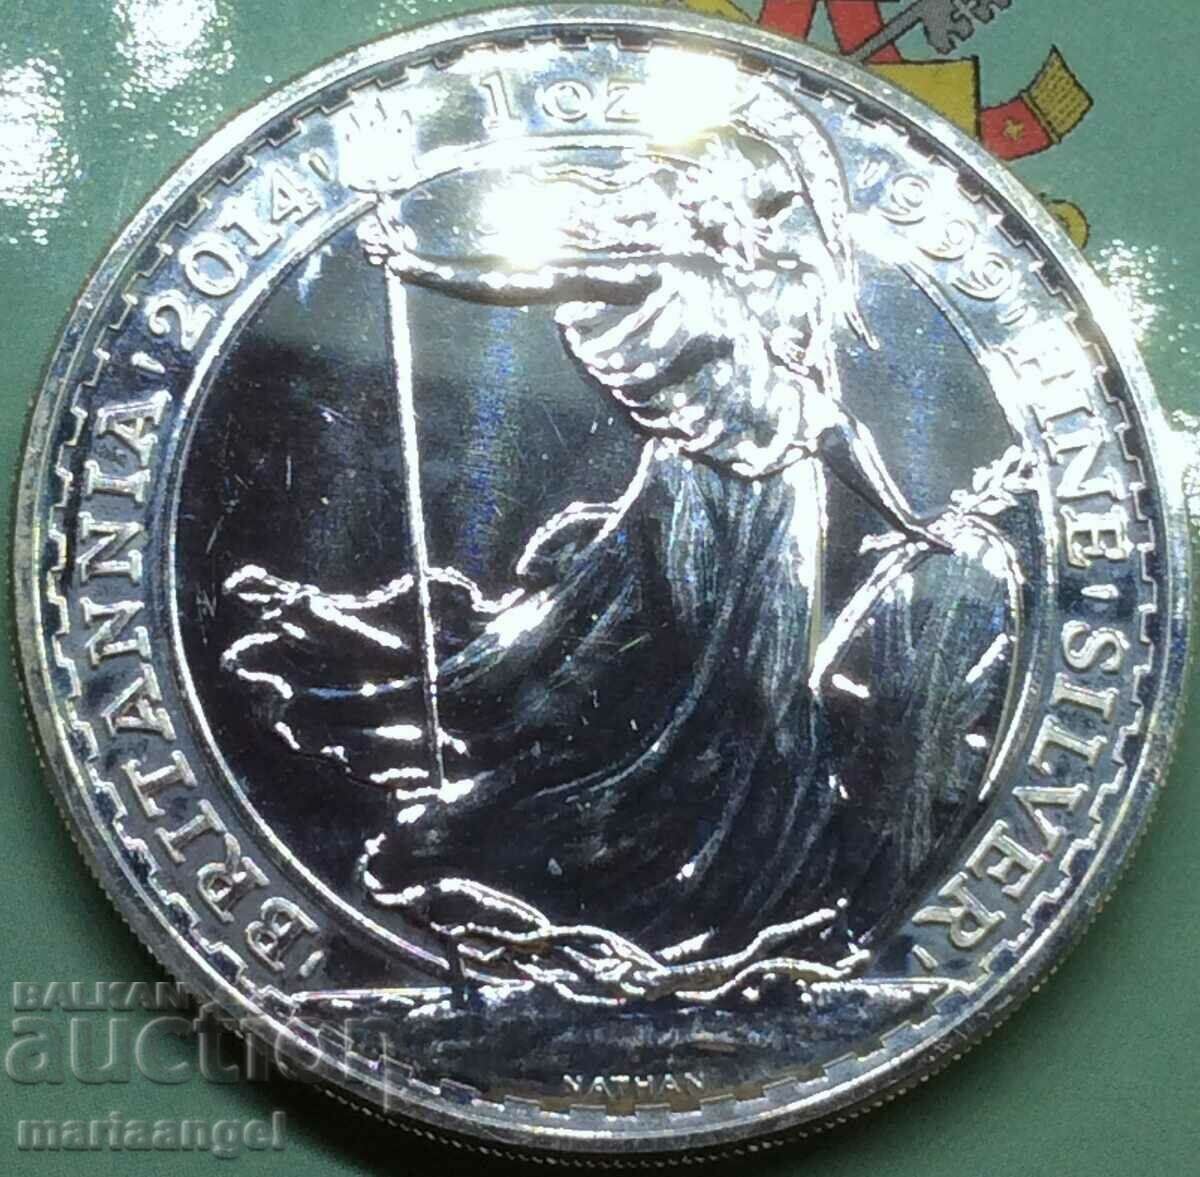 1 Oz Marea Britanie 2 Pounds 2014 „Britain” UNC Argint